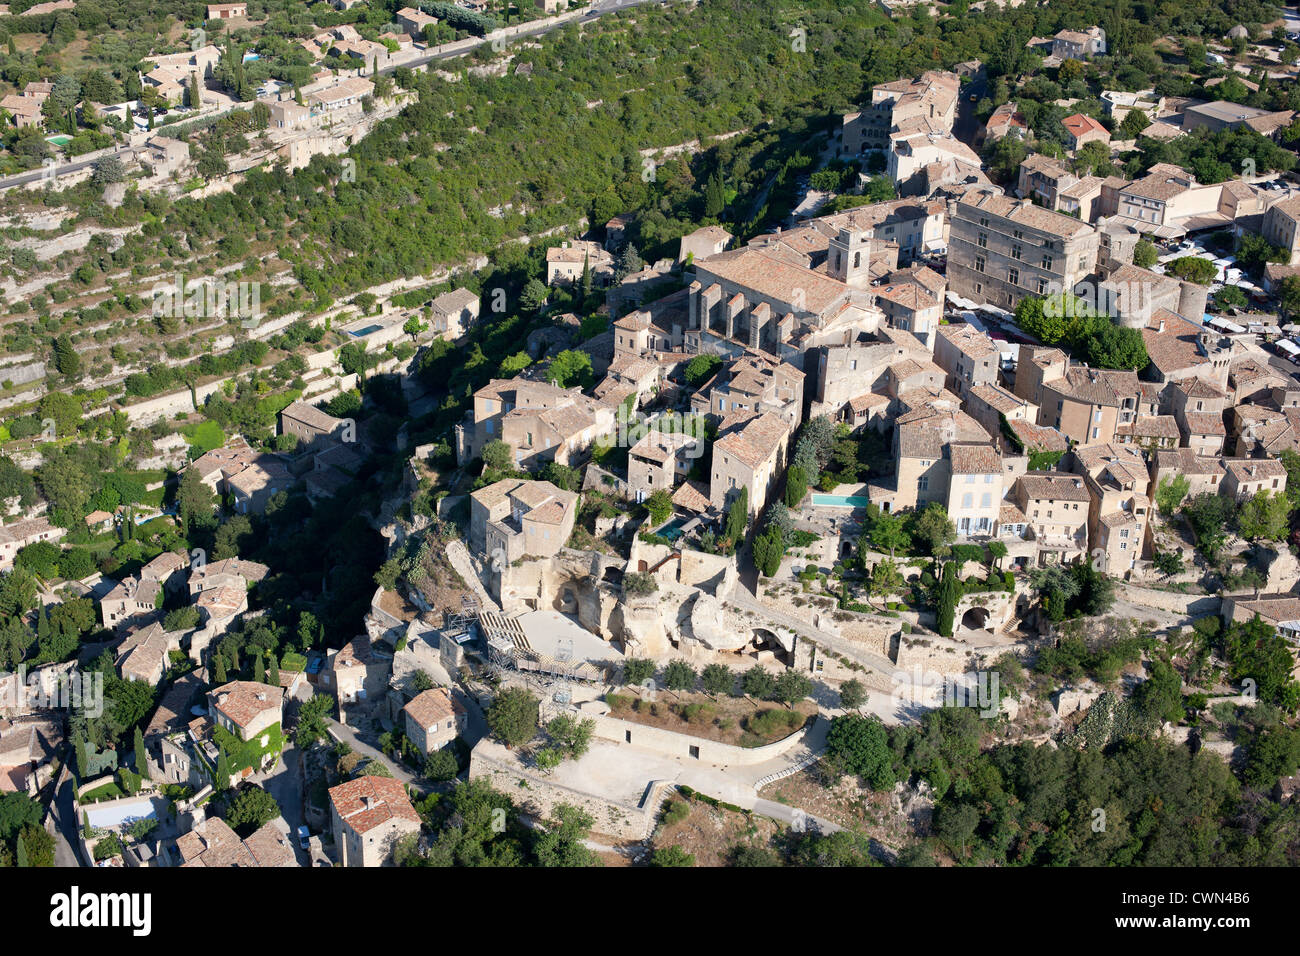 VUE AÉRIENNE.Village médiéval au sommet d'une colline.Gordes, Lubéron, Vaucluse, Provence, France. Banque D'Images